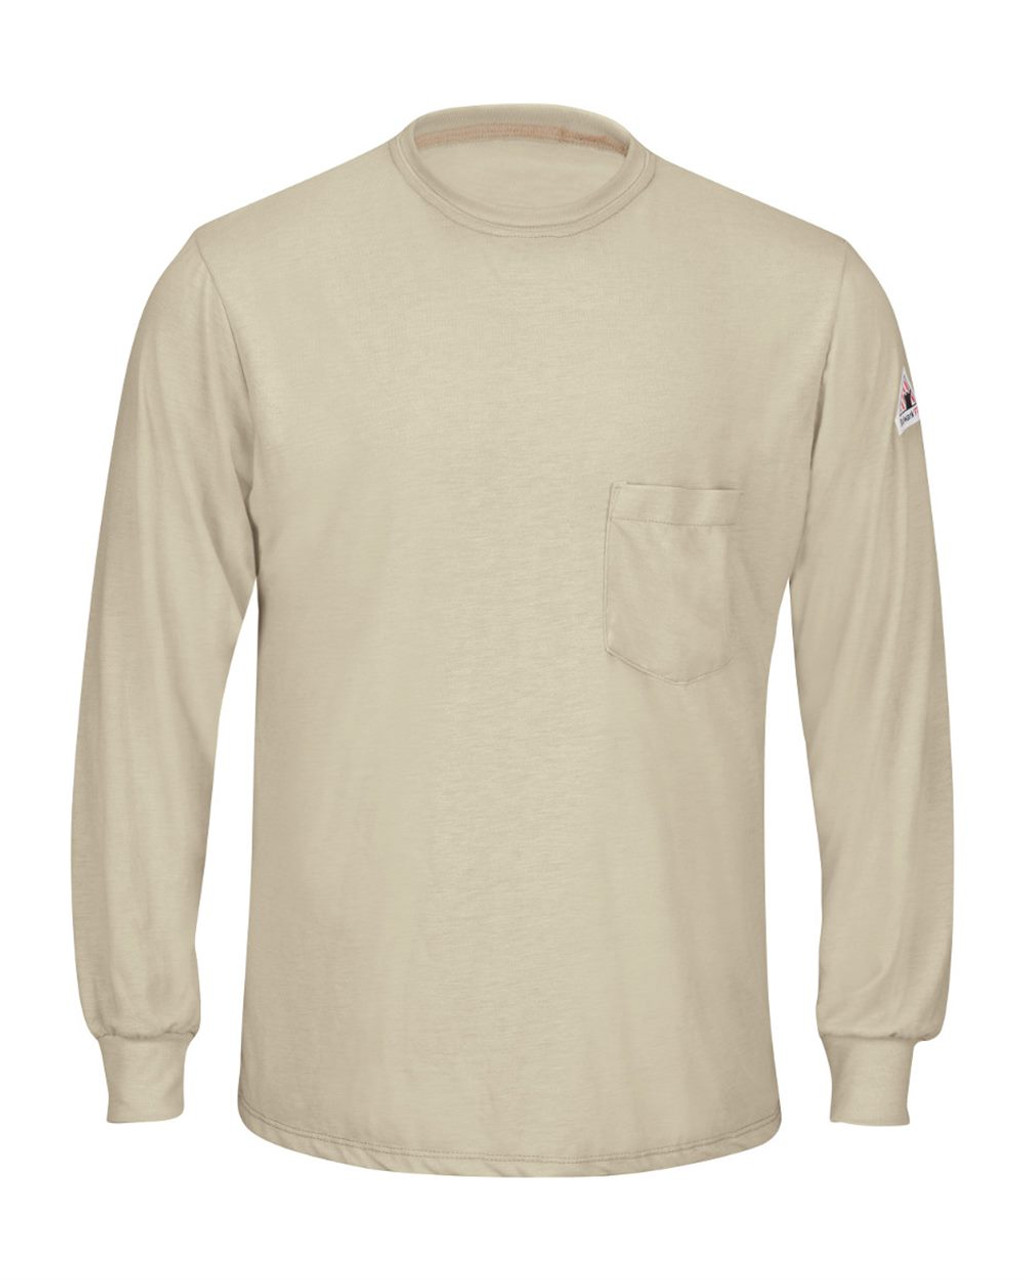 Custom Long Sleeve Lightweight T-Shirt - SMT8